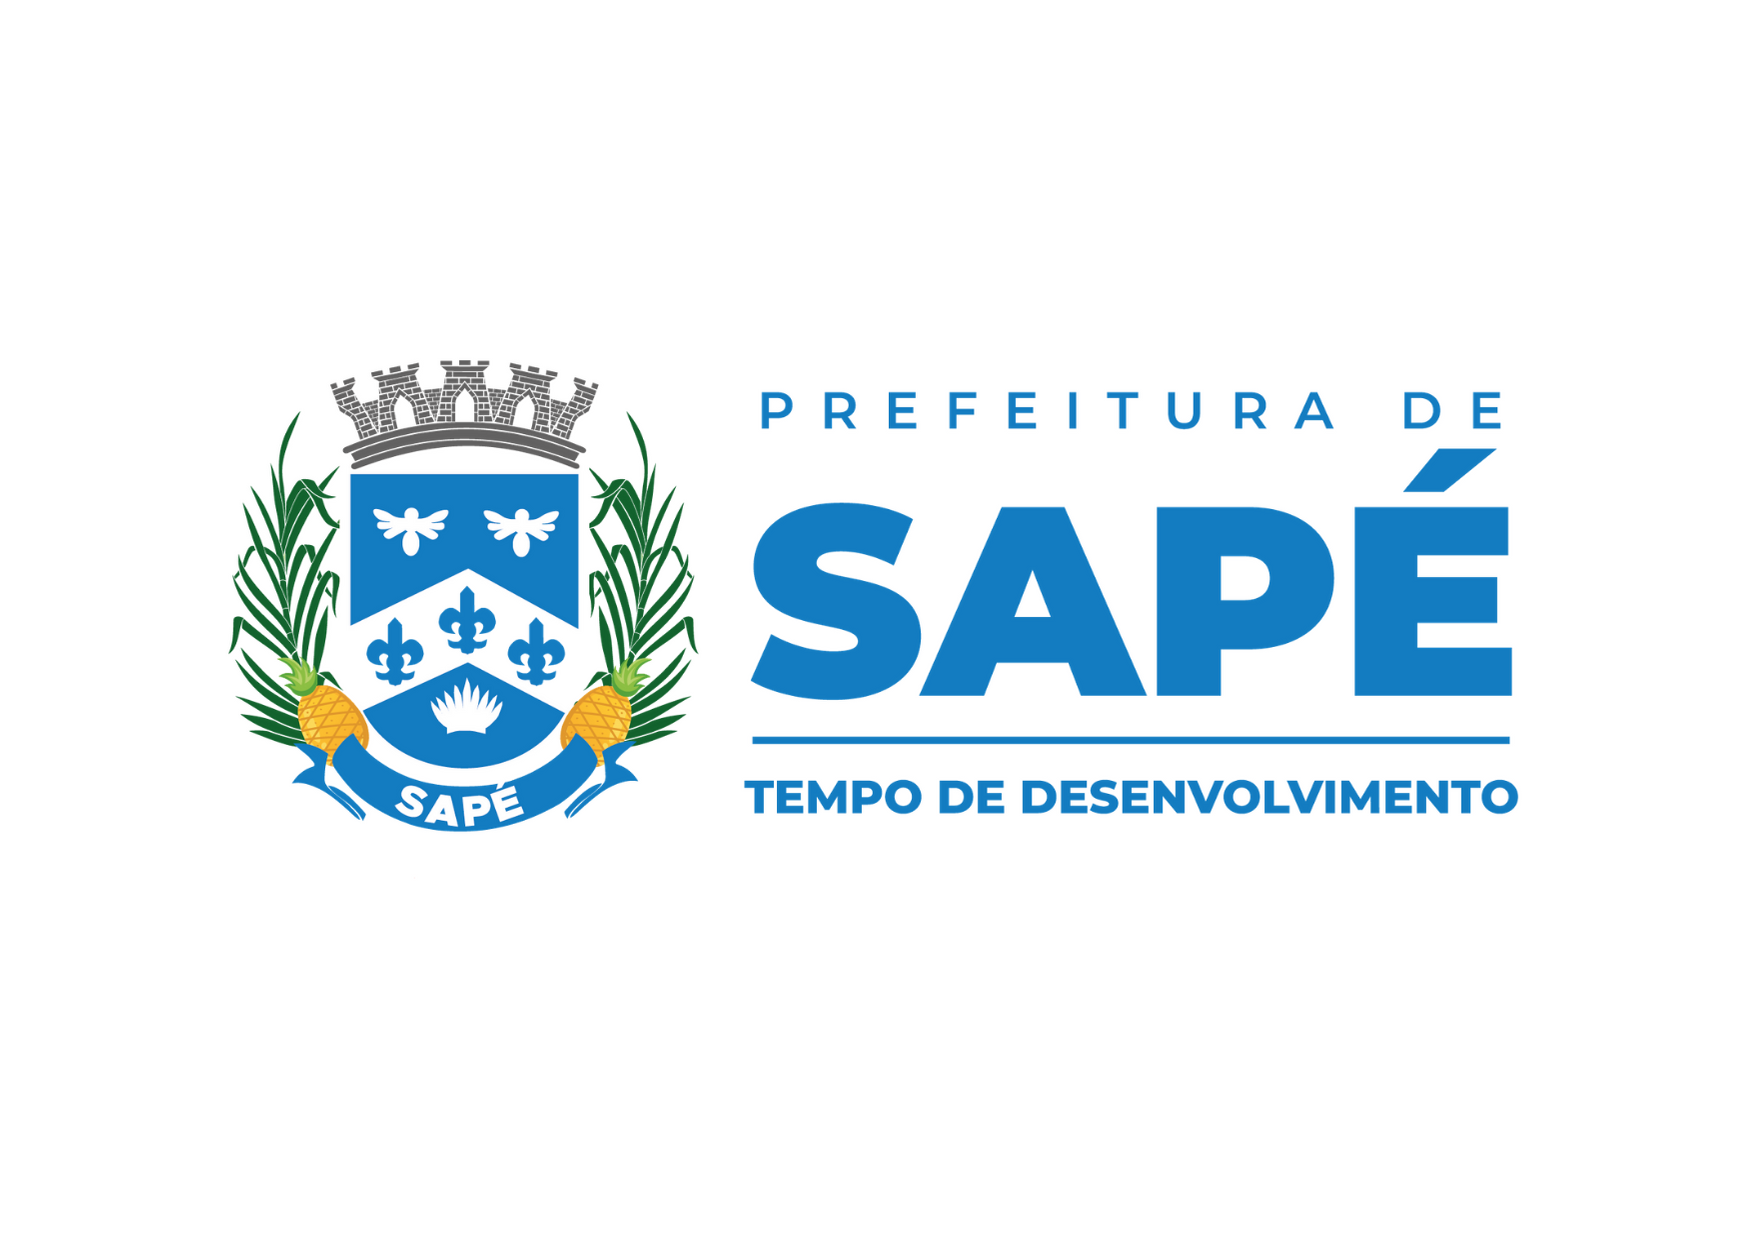 Prefeitura de Sapé ganha nova logomarca com brasão da cidade e adota cores da bandeira, garantindo impessoalidade e economia